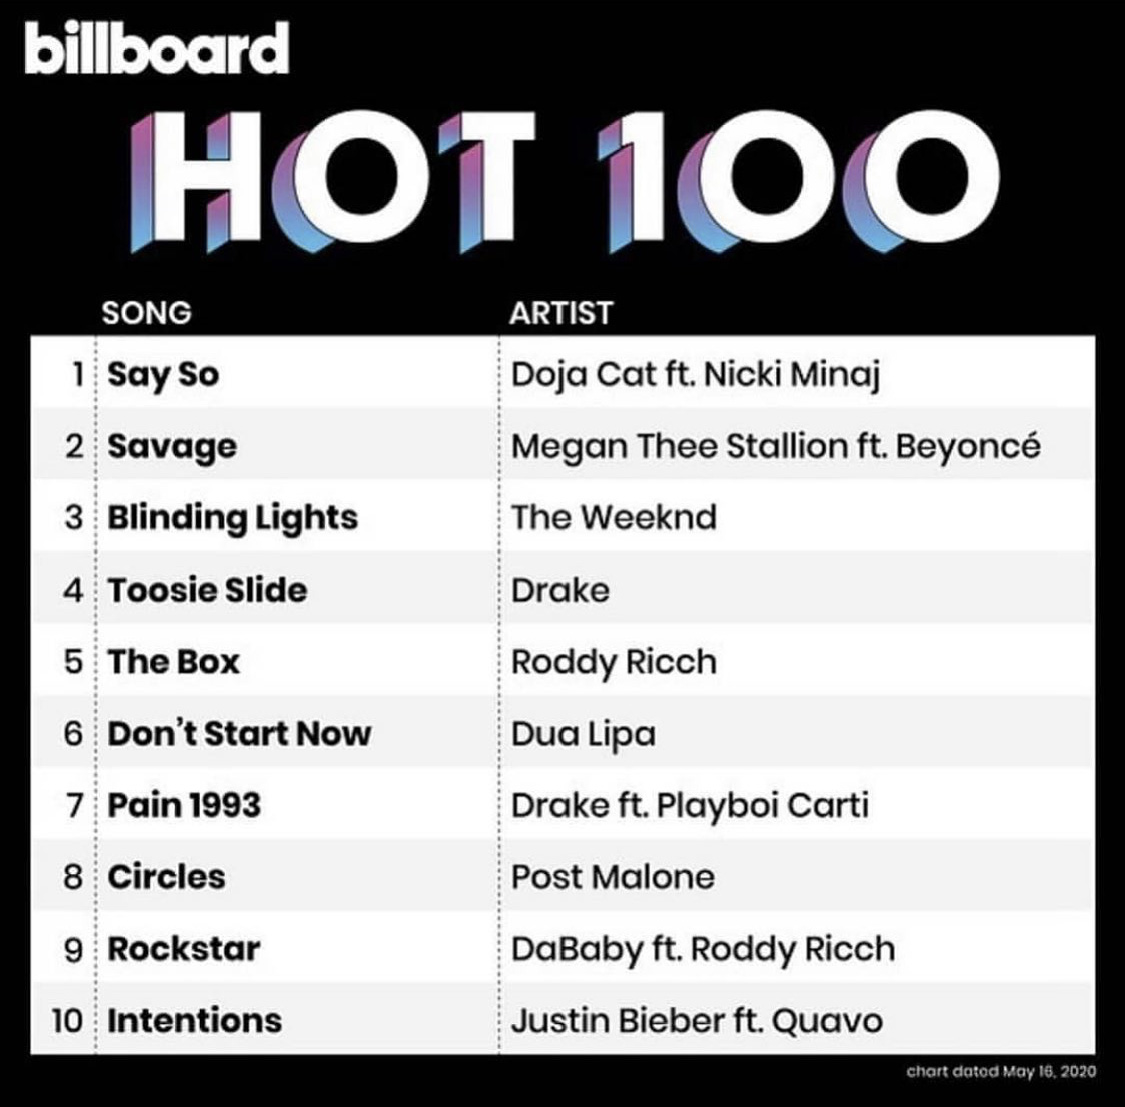 Fire kvinner i toppen: Doja Cat, Nicki Minaj, Megan Thee Stallion og Beyonce på 1. og 2. plass på Billboard Hot 100